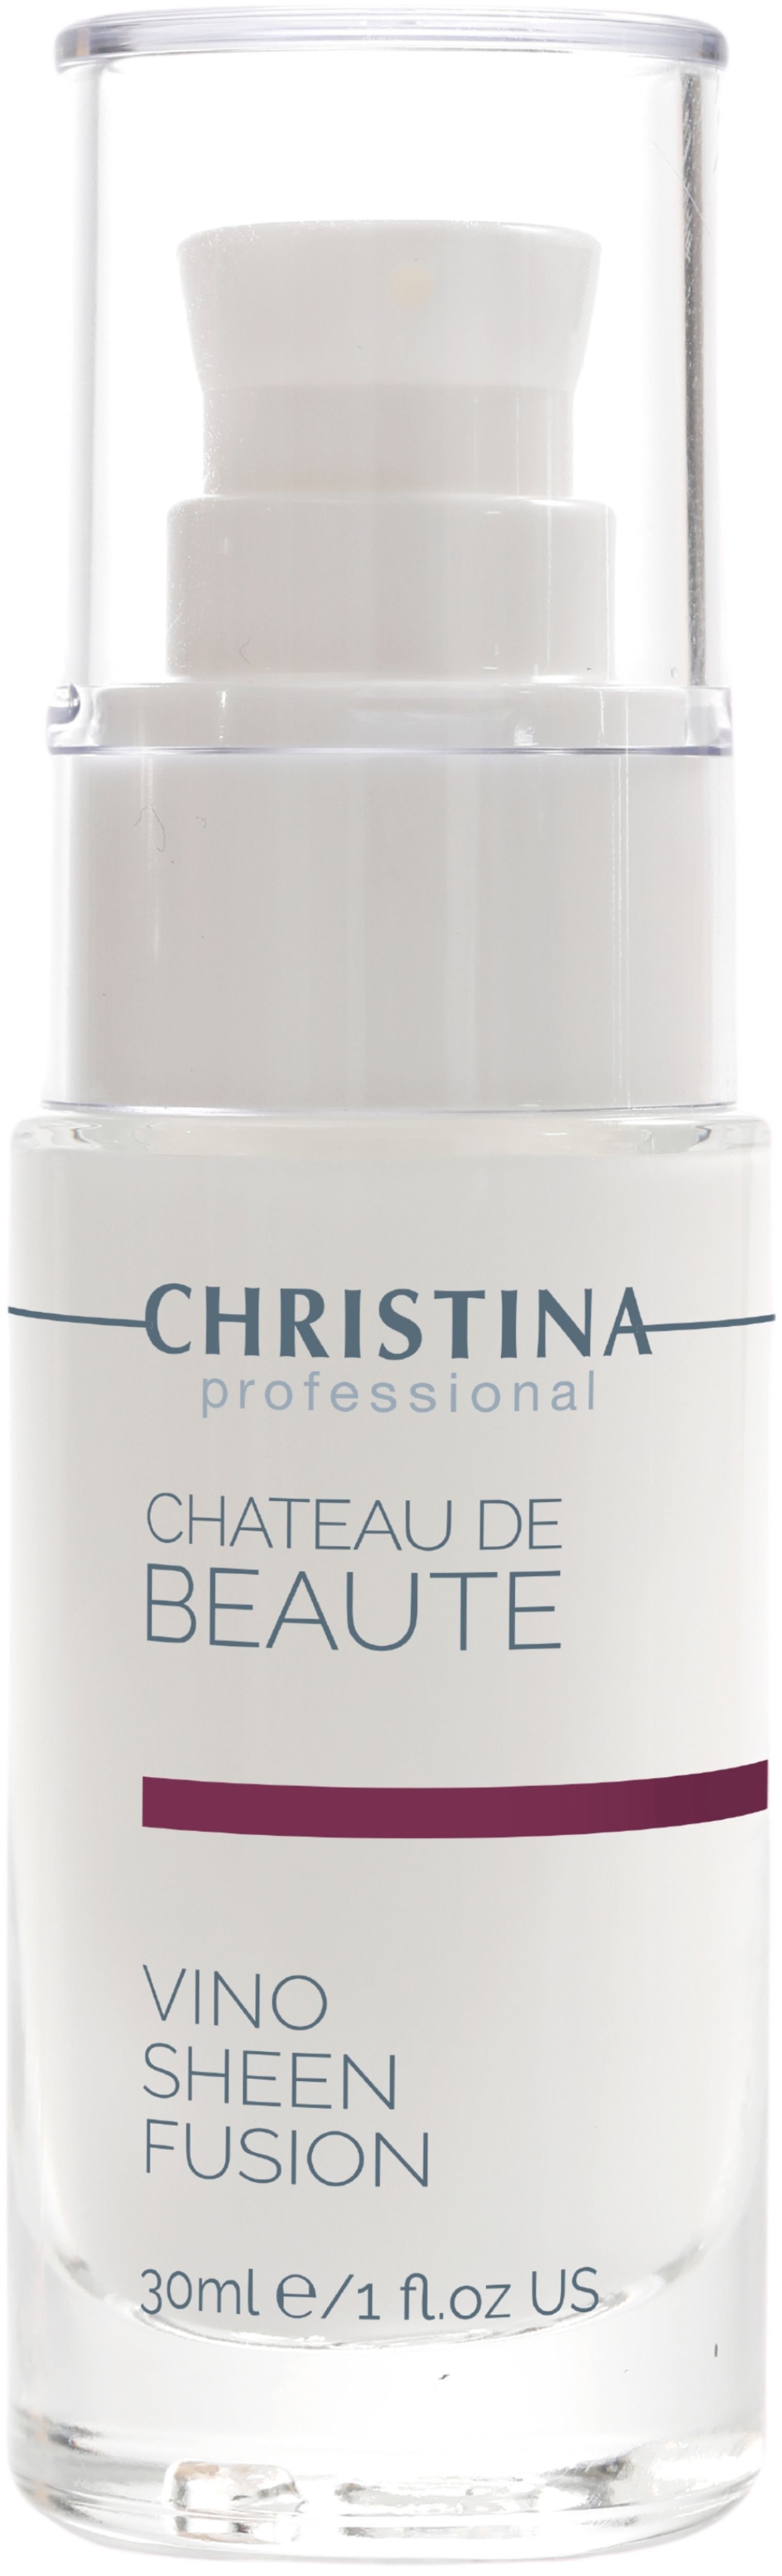 Подарочный набор Christina Chateau De Beaute: Флюид 30 мл + Очищающий гель 300 мл + Маска для мгновенного лифтинга 75 мл + Защитный крем SPF 30 50 мл - фото 2